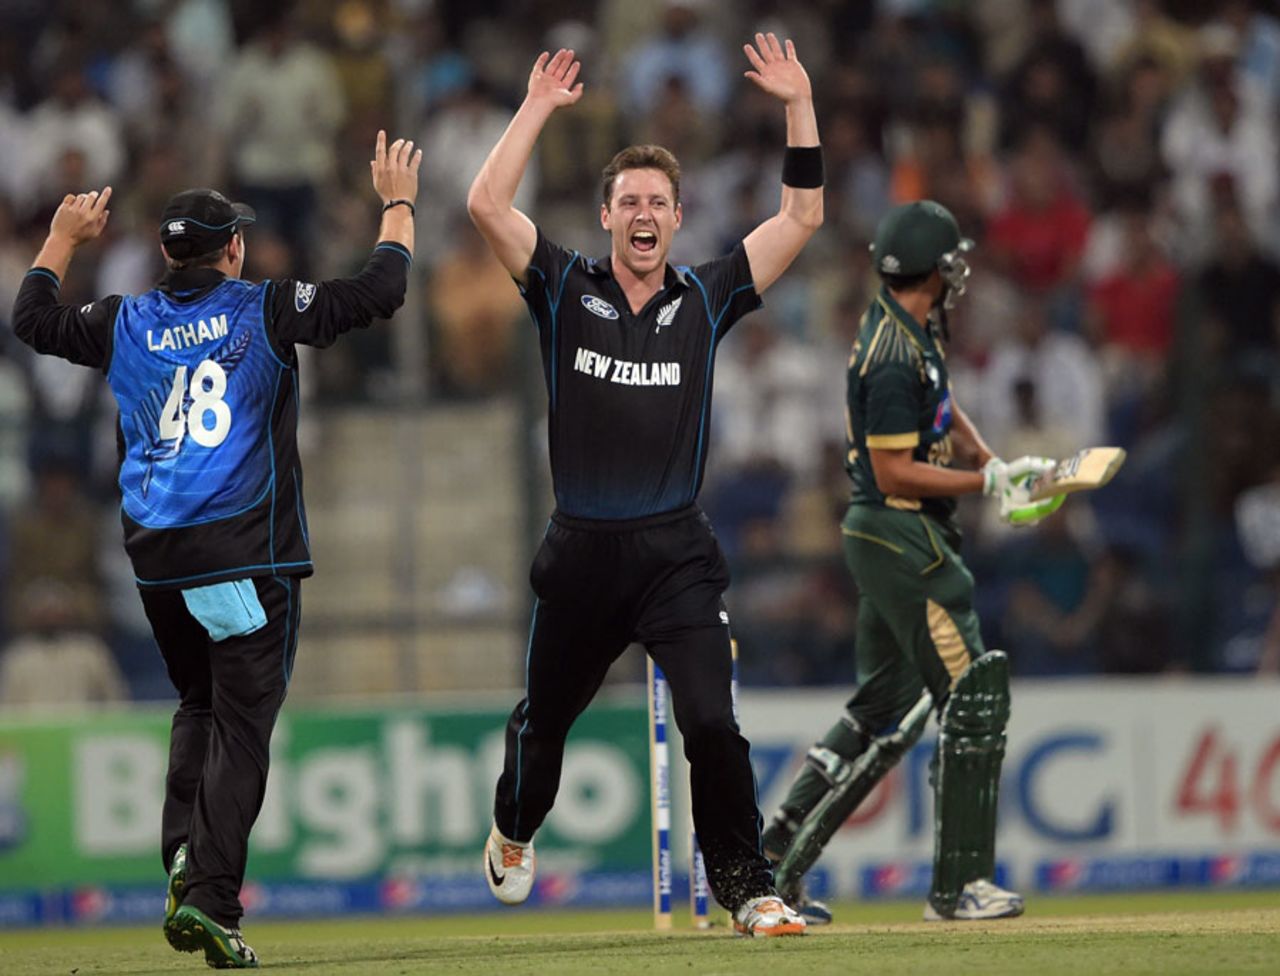 Matt Henry exults after dismissing Younis Khan, Pakistan v New Zealand, 5th ODI, Abu Dhabi, December 19, 2014